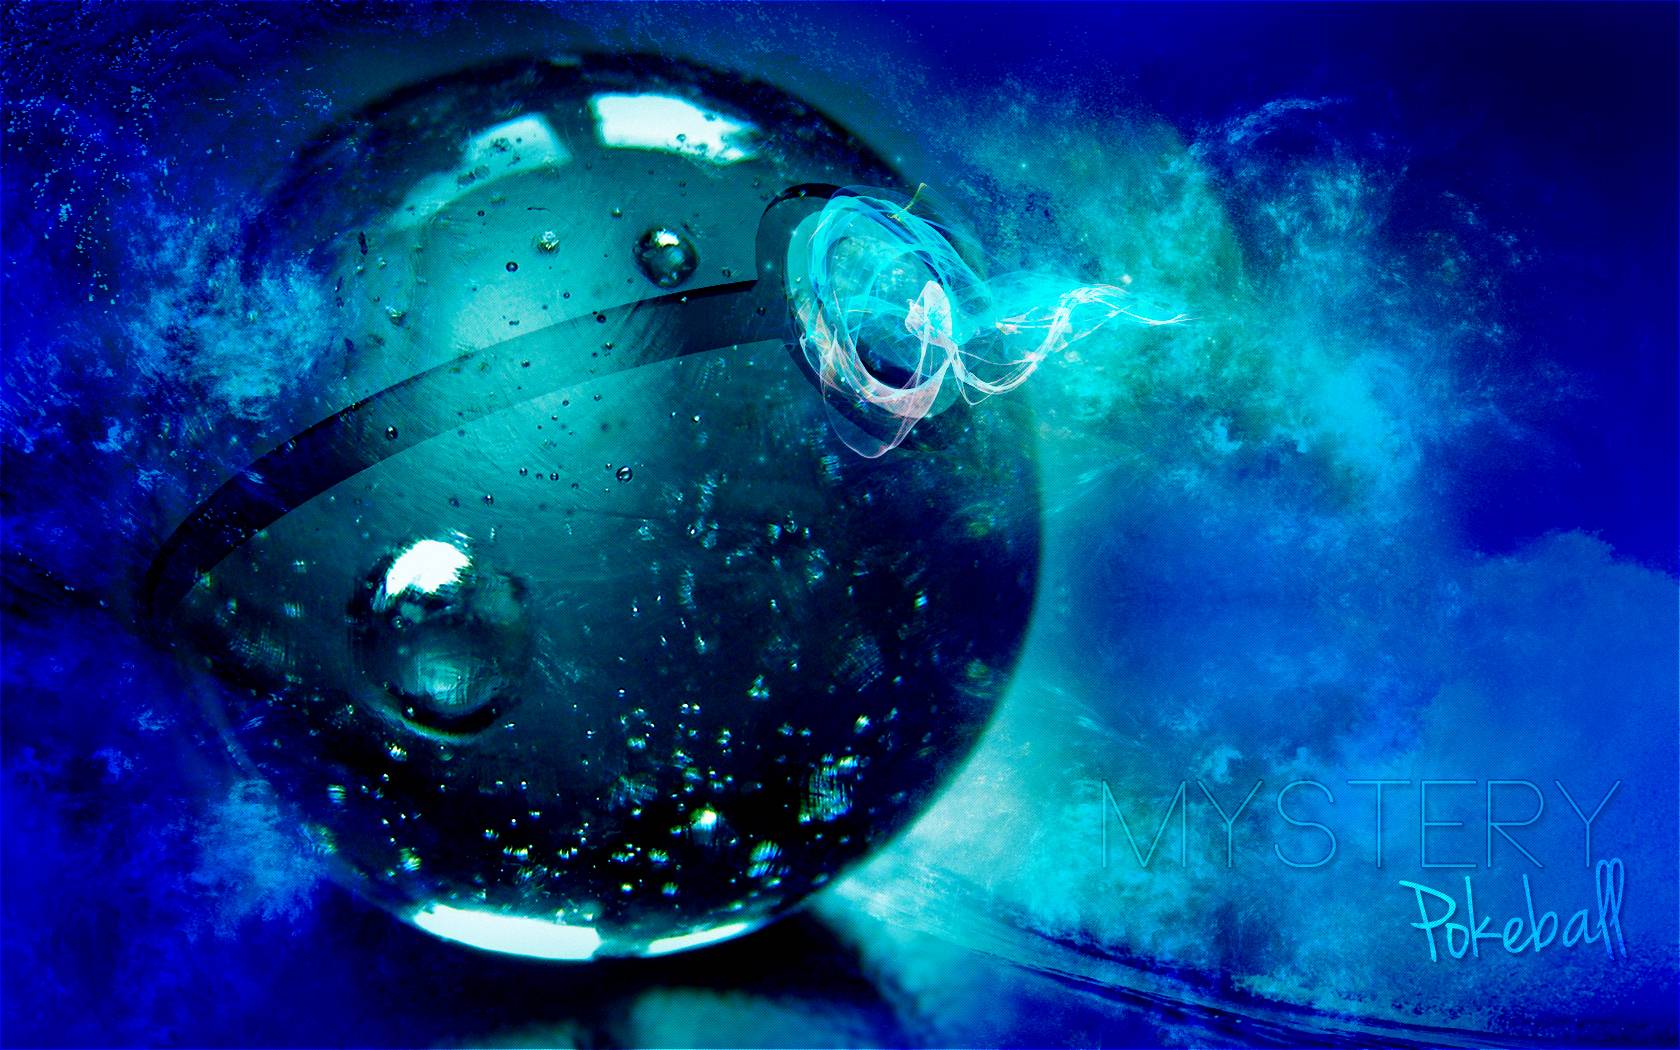 Mystic pokeball underwater scene wallpaper